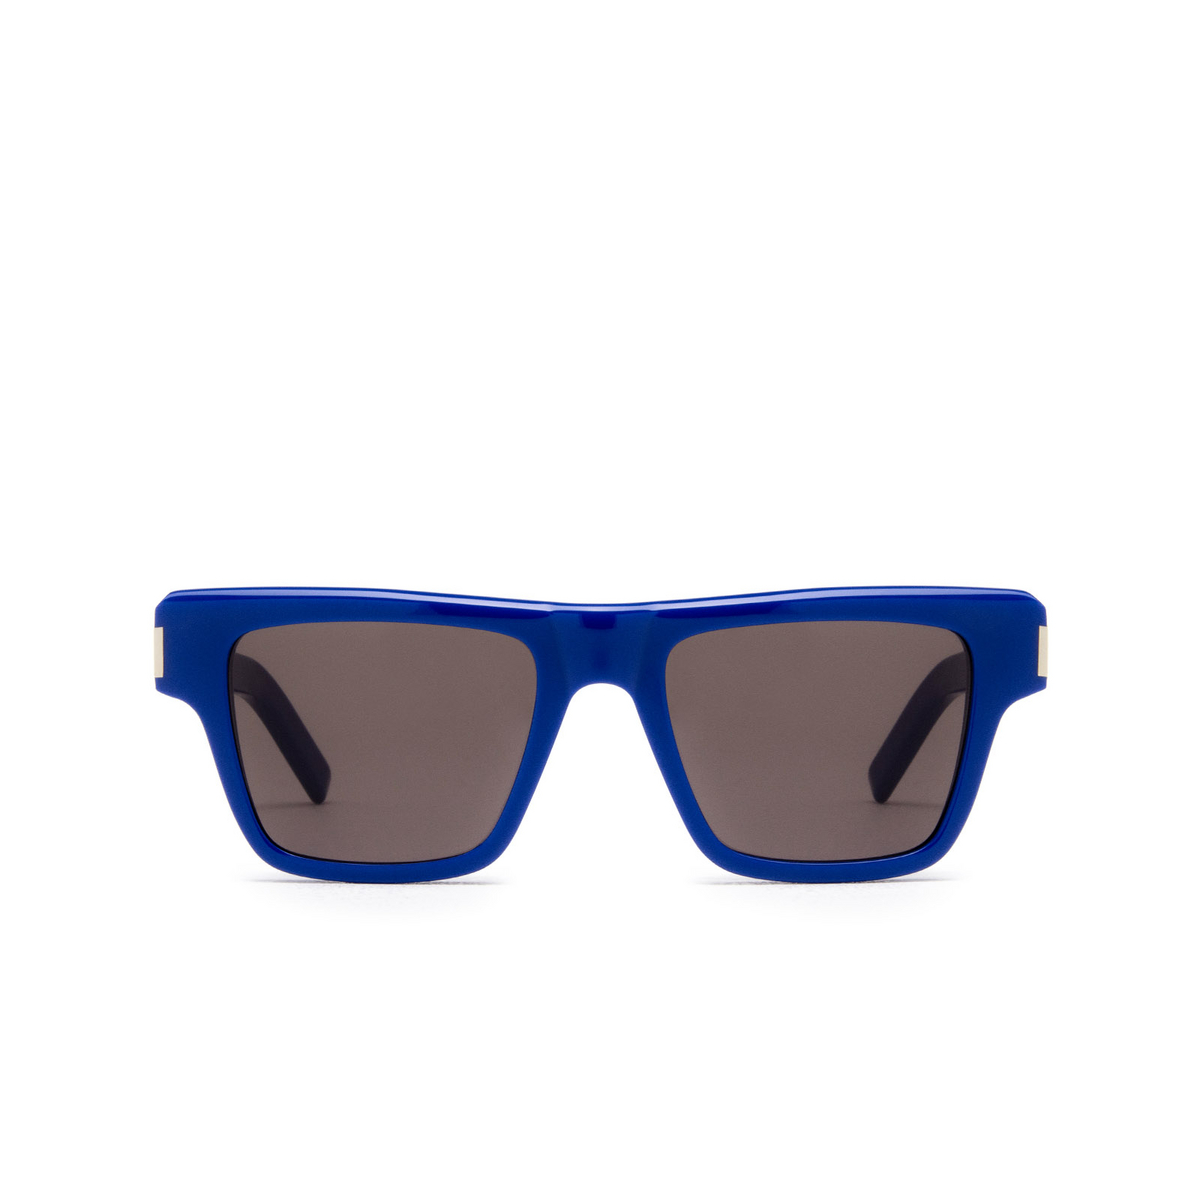 Saint Laurent® Rectangle Sunglasses: SL 469 color 003 Shiny Solid Electric Blue - front view